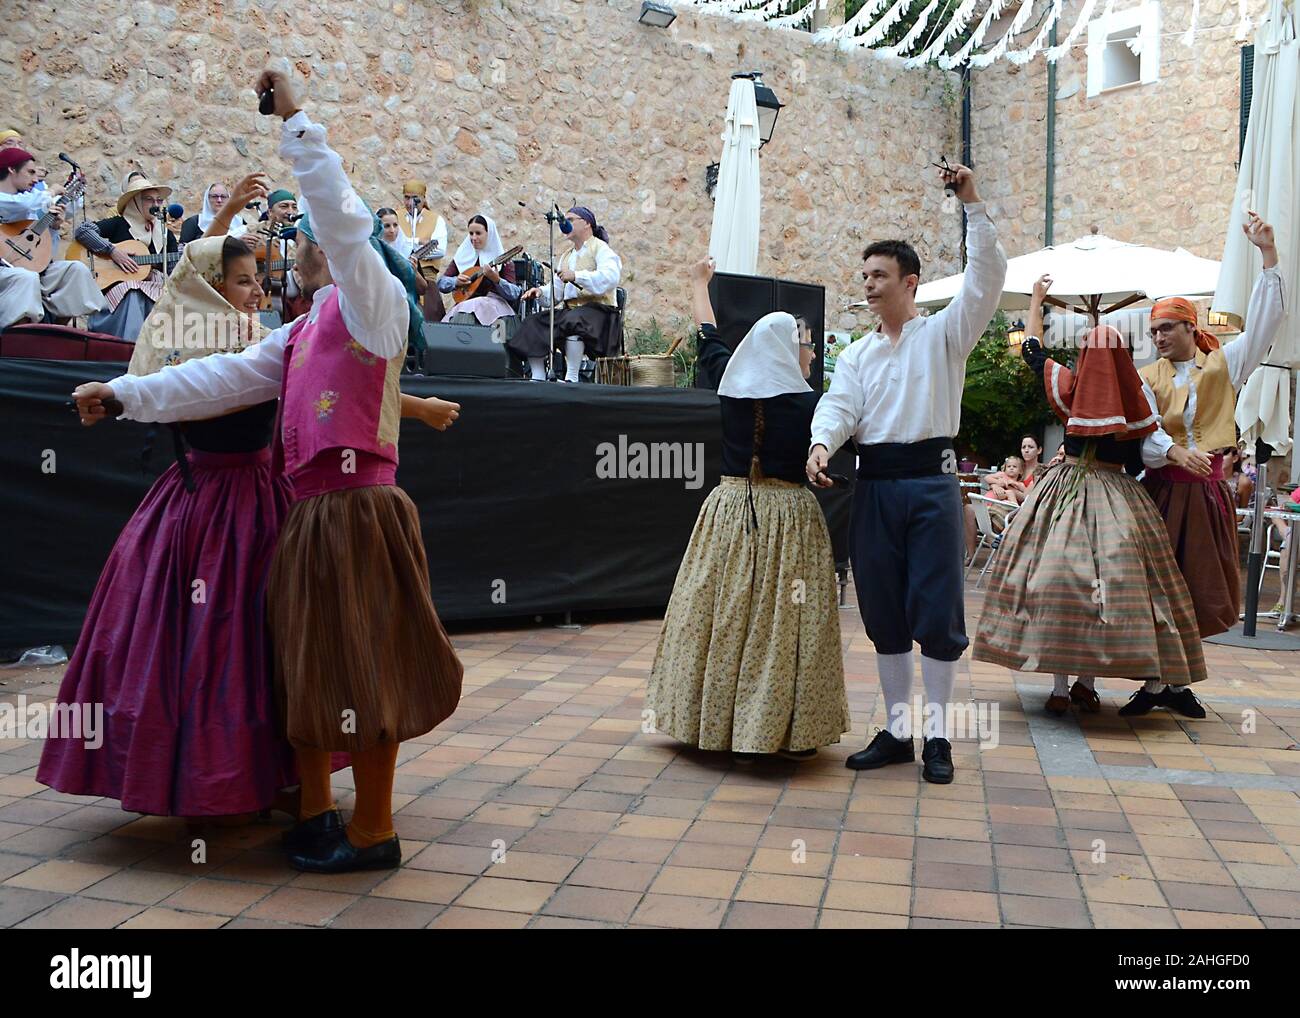 Fornalutx Majorque / Espagne ; 11/14/2015 : célébration de patron Fornalutx. Danseurs dans une danse folklorique typique de jota mallorquina. Célébration personnalisée Banque D'Images